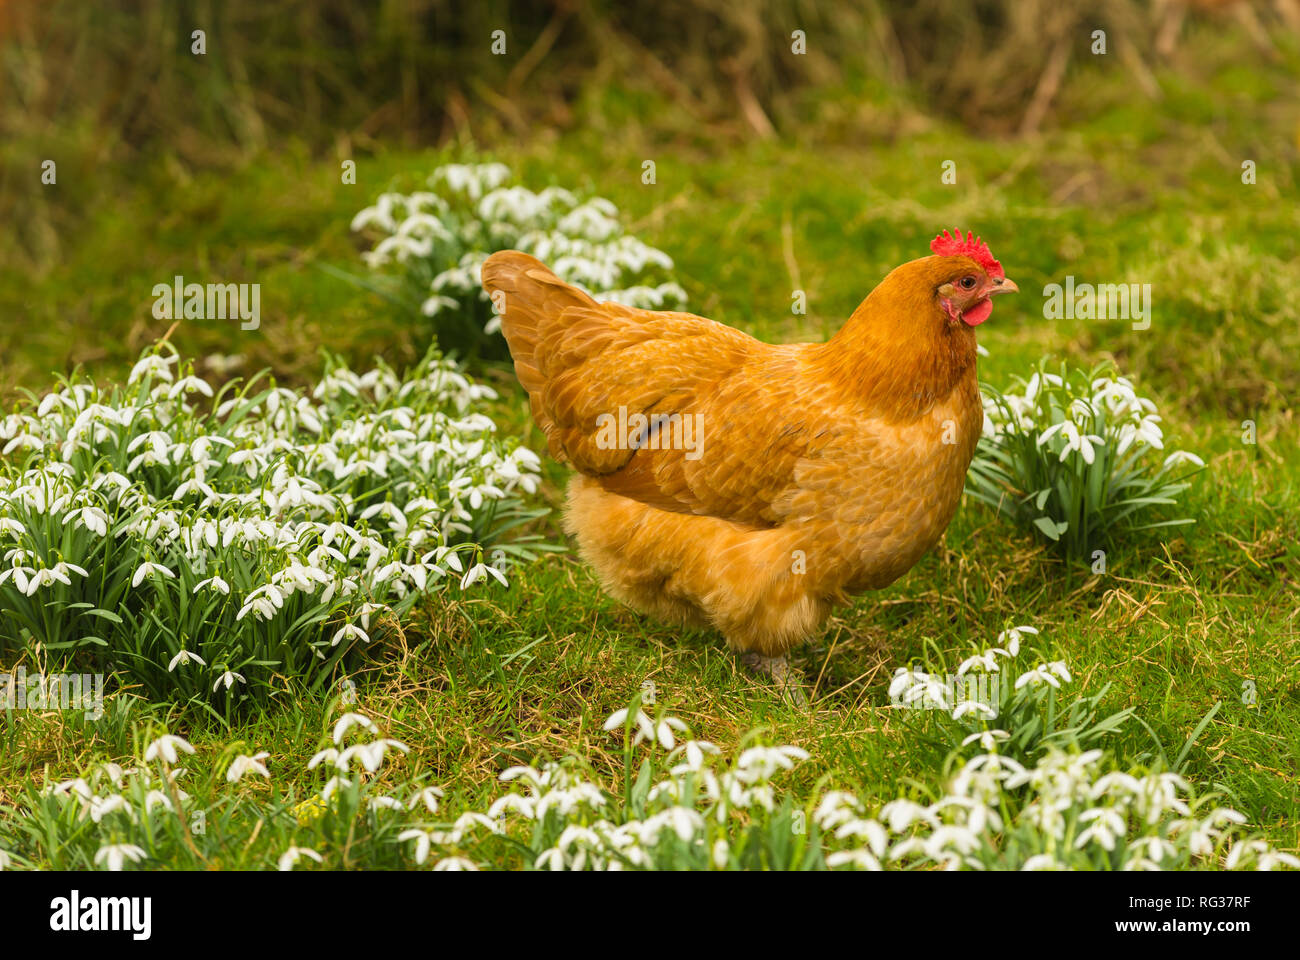 Poulet poule Orpington Buff ou au printemps avec les perce-neige. La femelle a une crête rouge et est en train de s'alimenter dans le jardin parmi les perce-neige. Banque D'Images